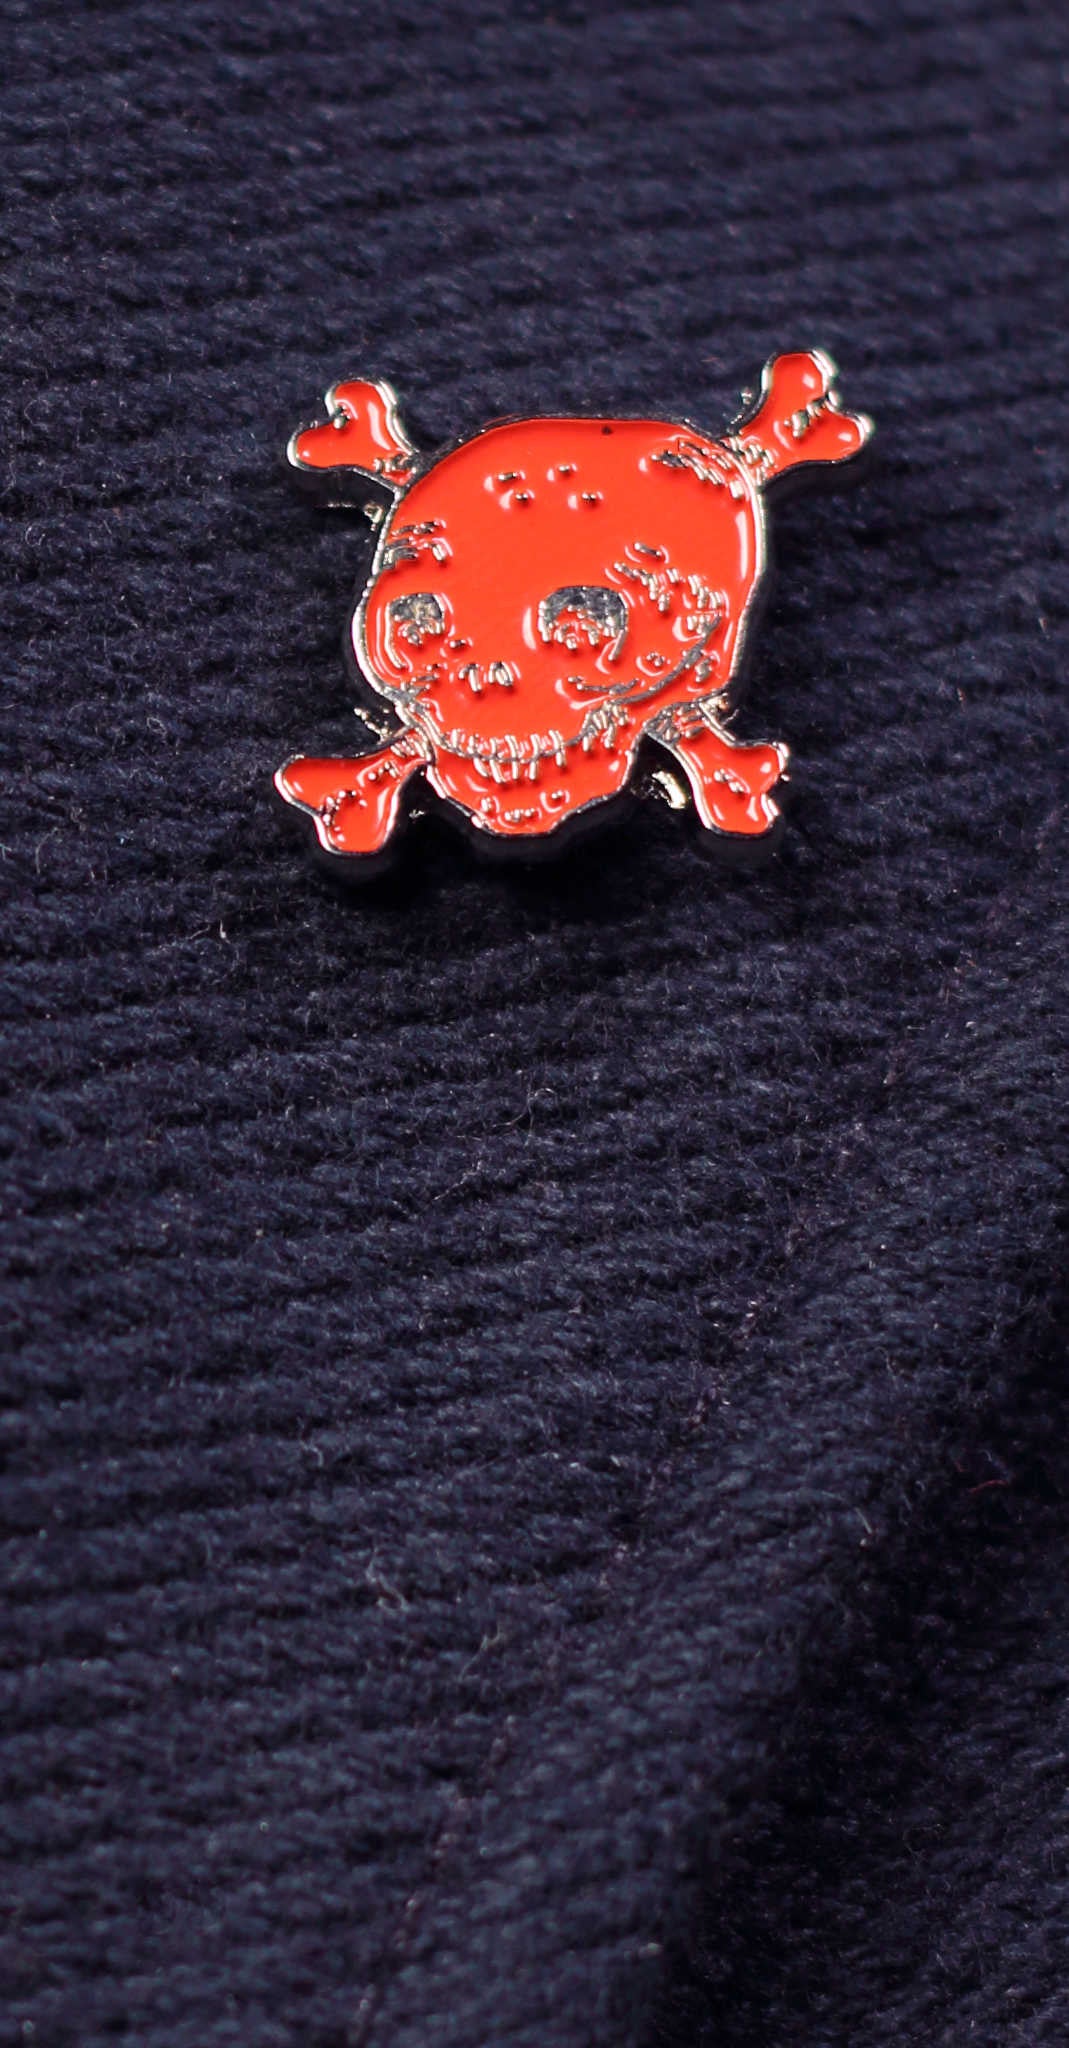 Red skull enamel lapel pin